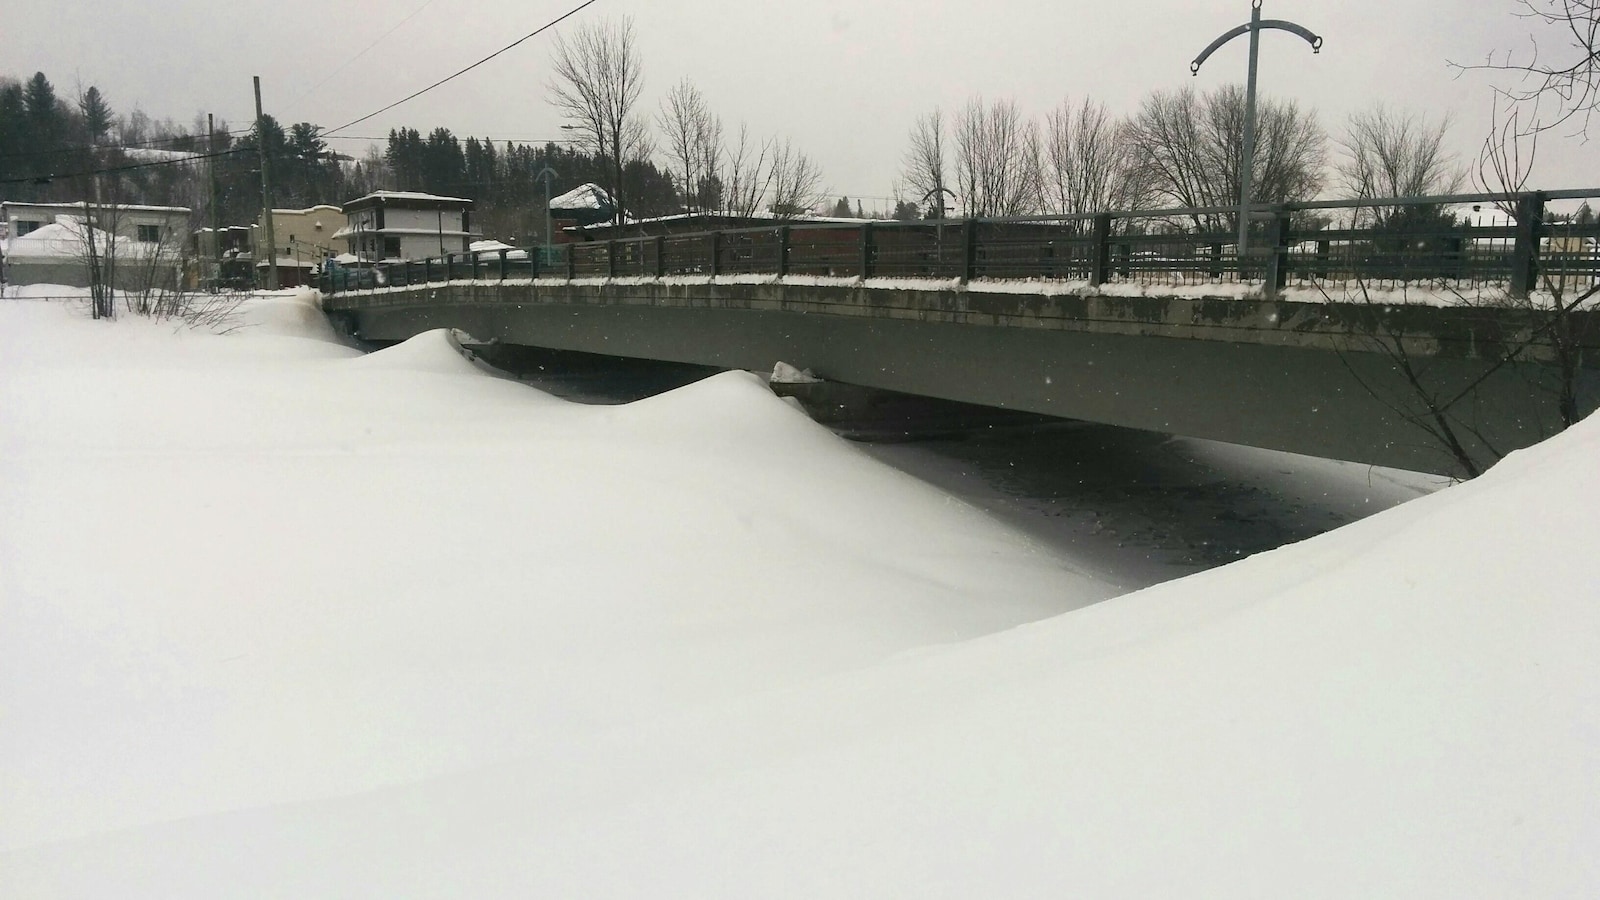 La rivière Sainte-Anne photographiée en hiver. On aperçoit un pont surplombant la rivière. Cette dernière est entièrement recouverte de neige.